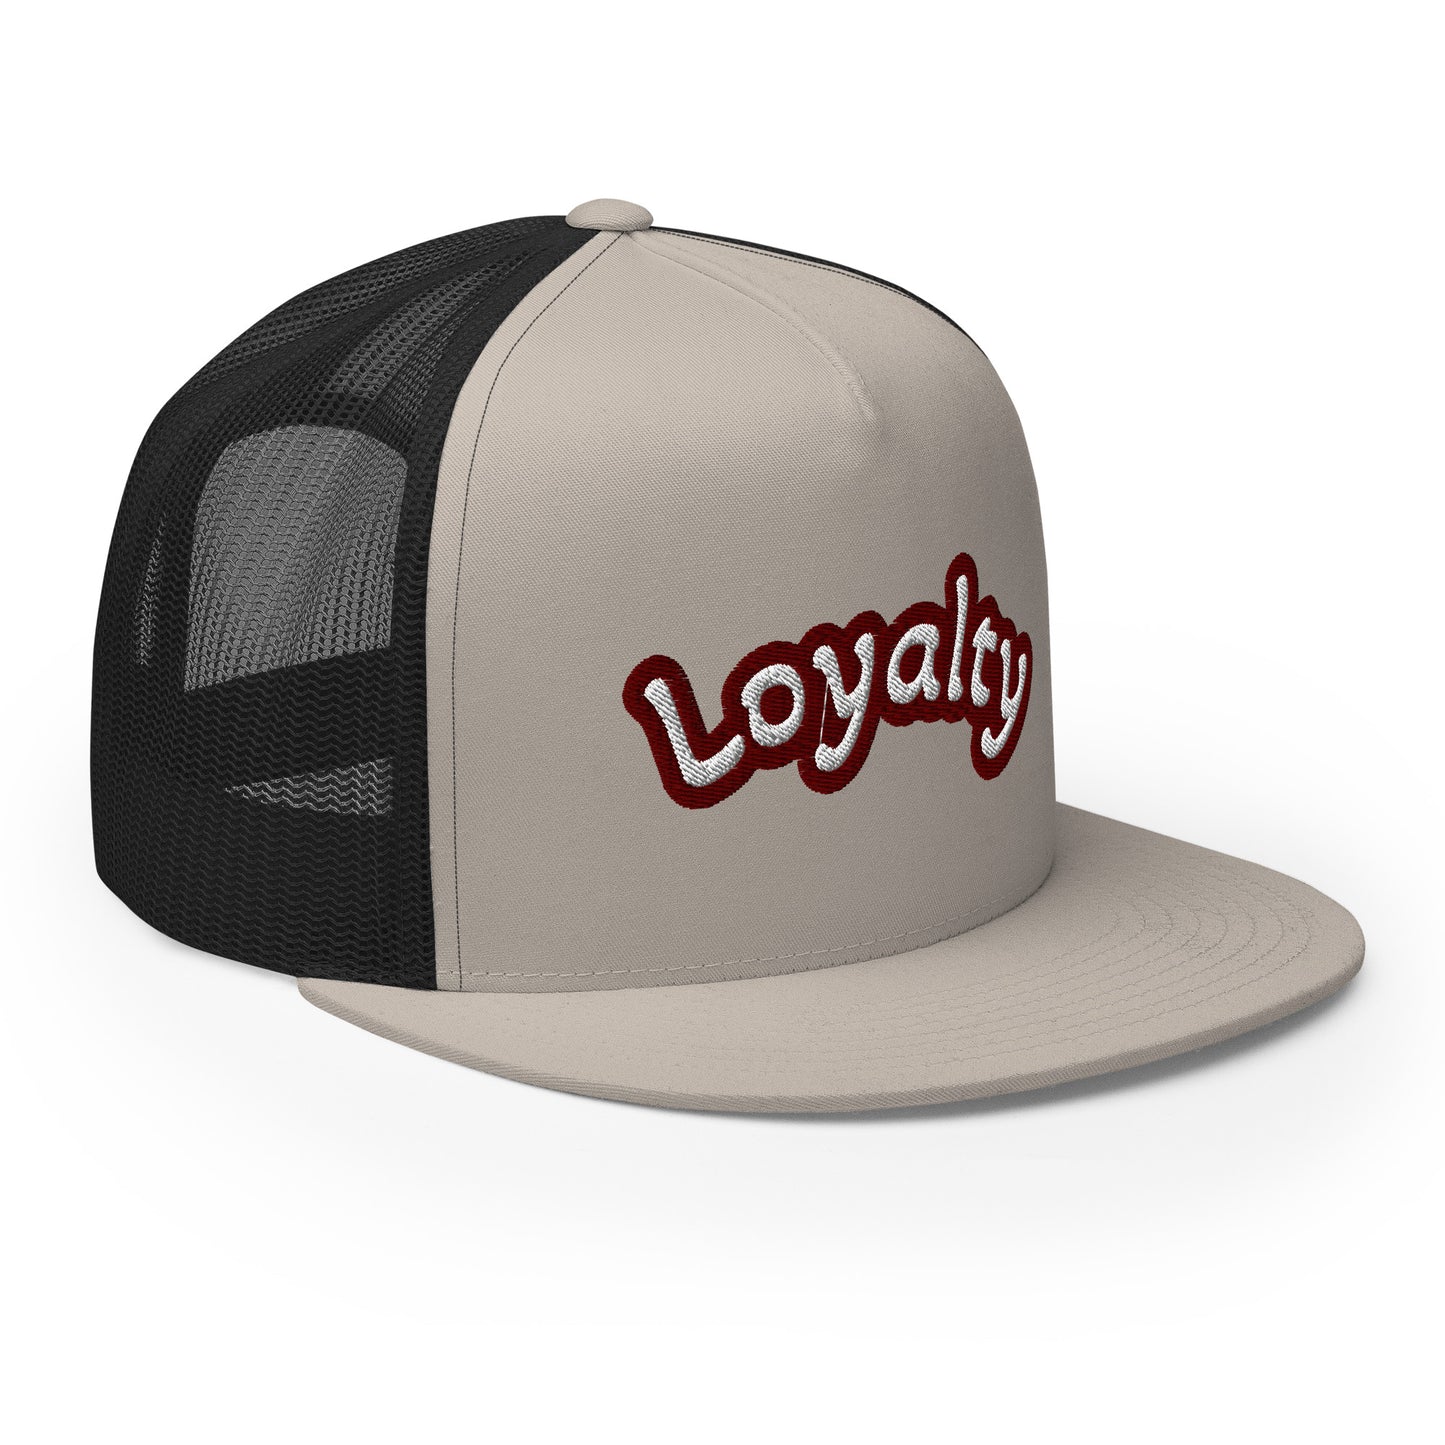 Loyalty Trucker Cap